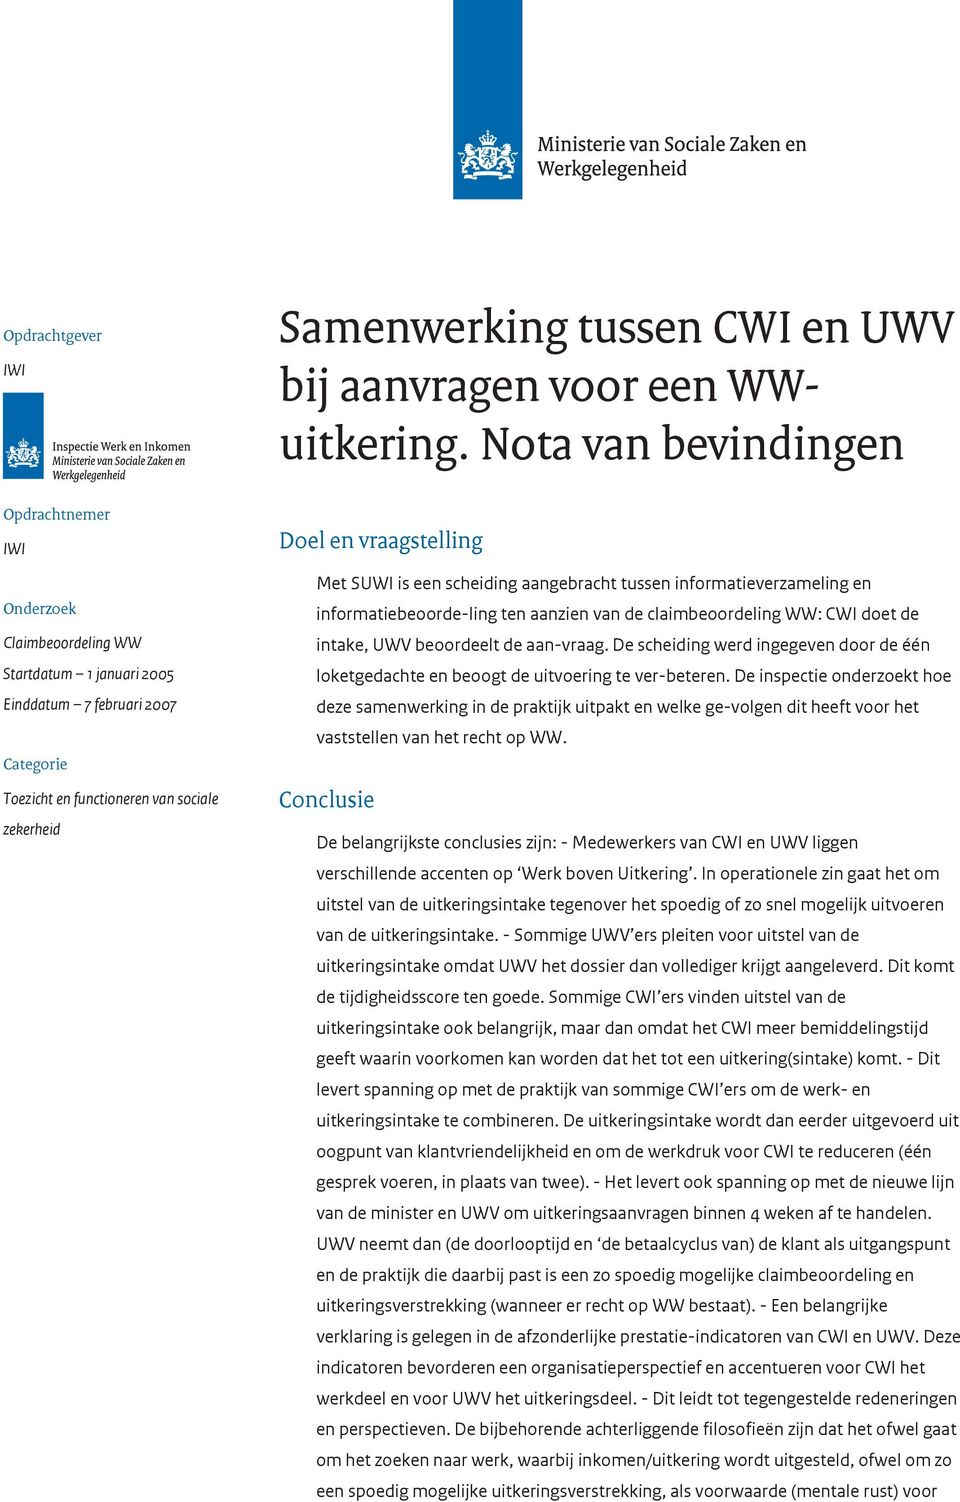 Met SUWI is een scheiding aangebracht tussen informatieverzameling en informatiebeoorde-ling ten aanzien van de claimbeoordeling WW: CWI doet de intake, UWV beoordeelt de aan-vraag.